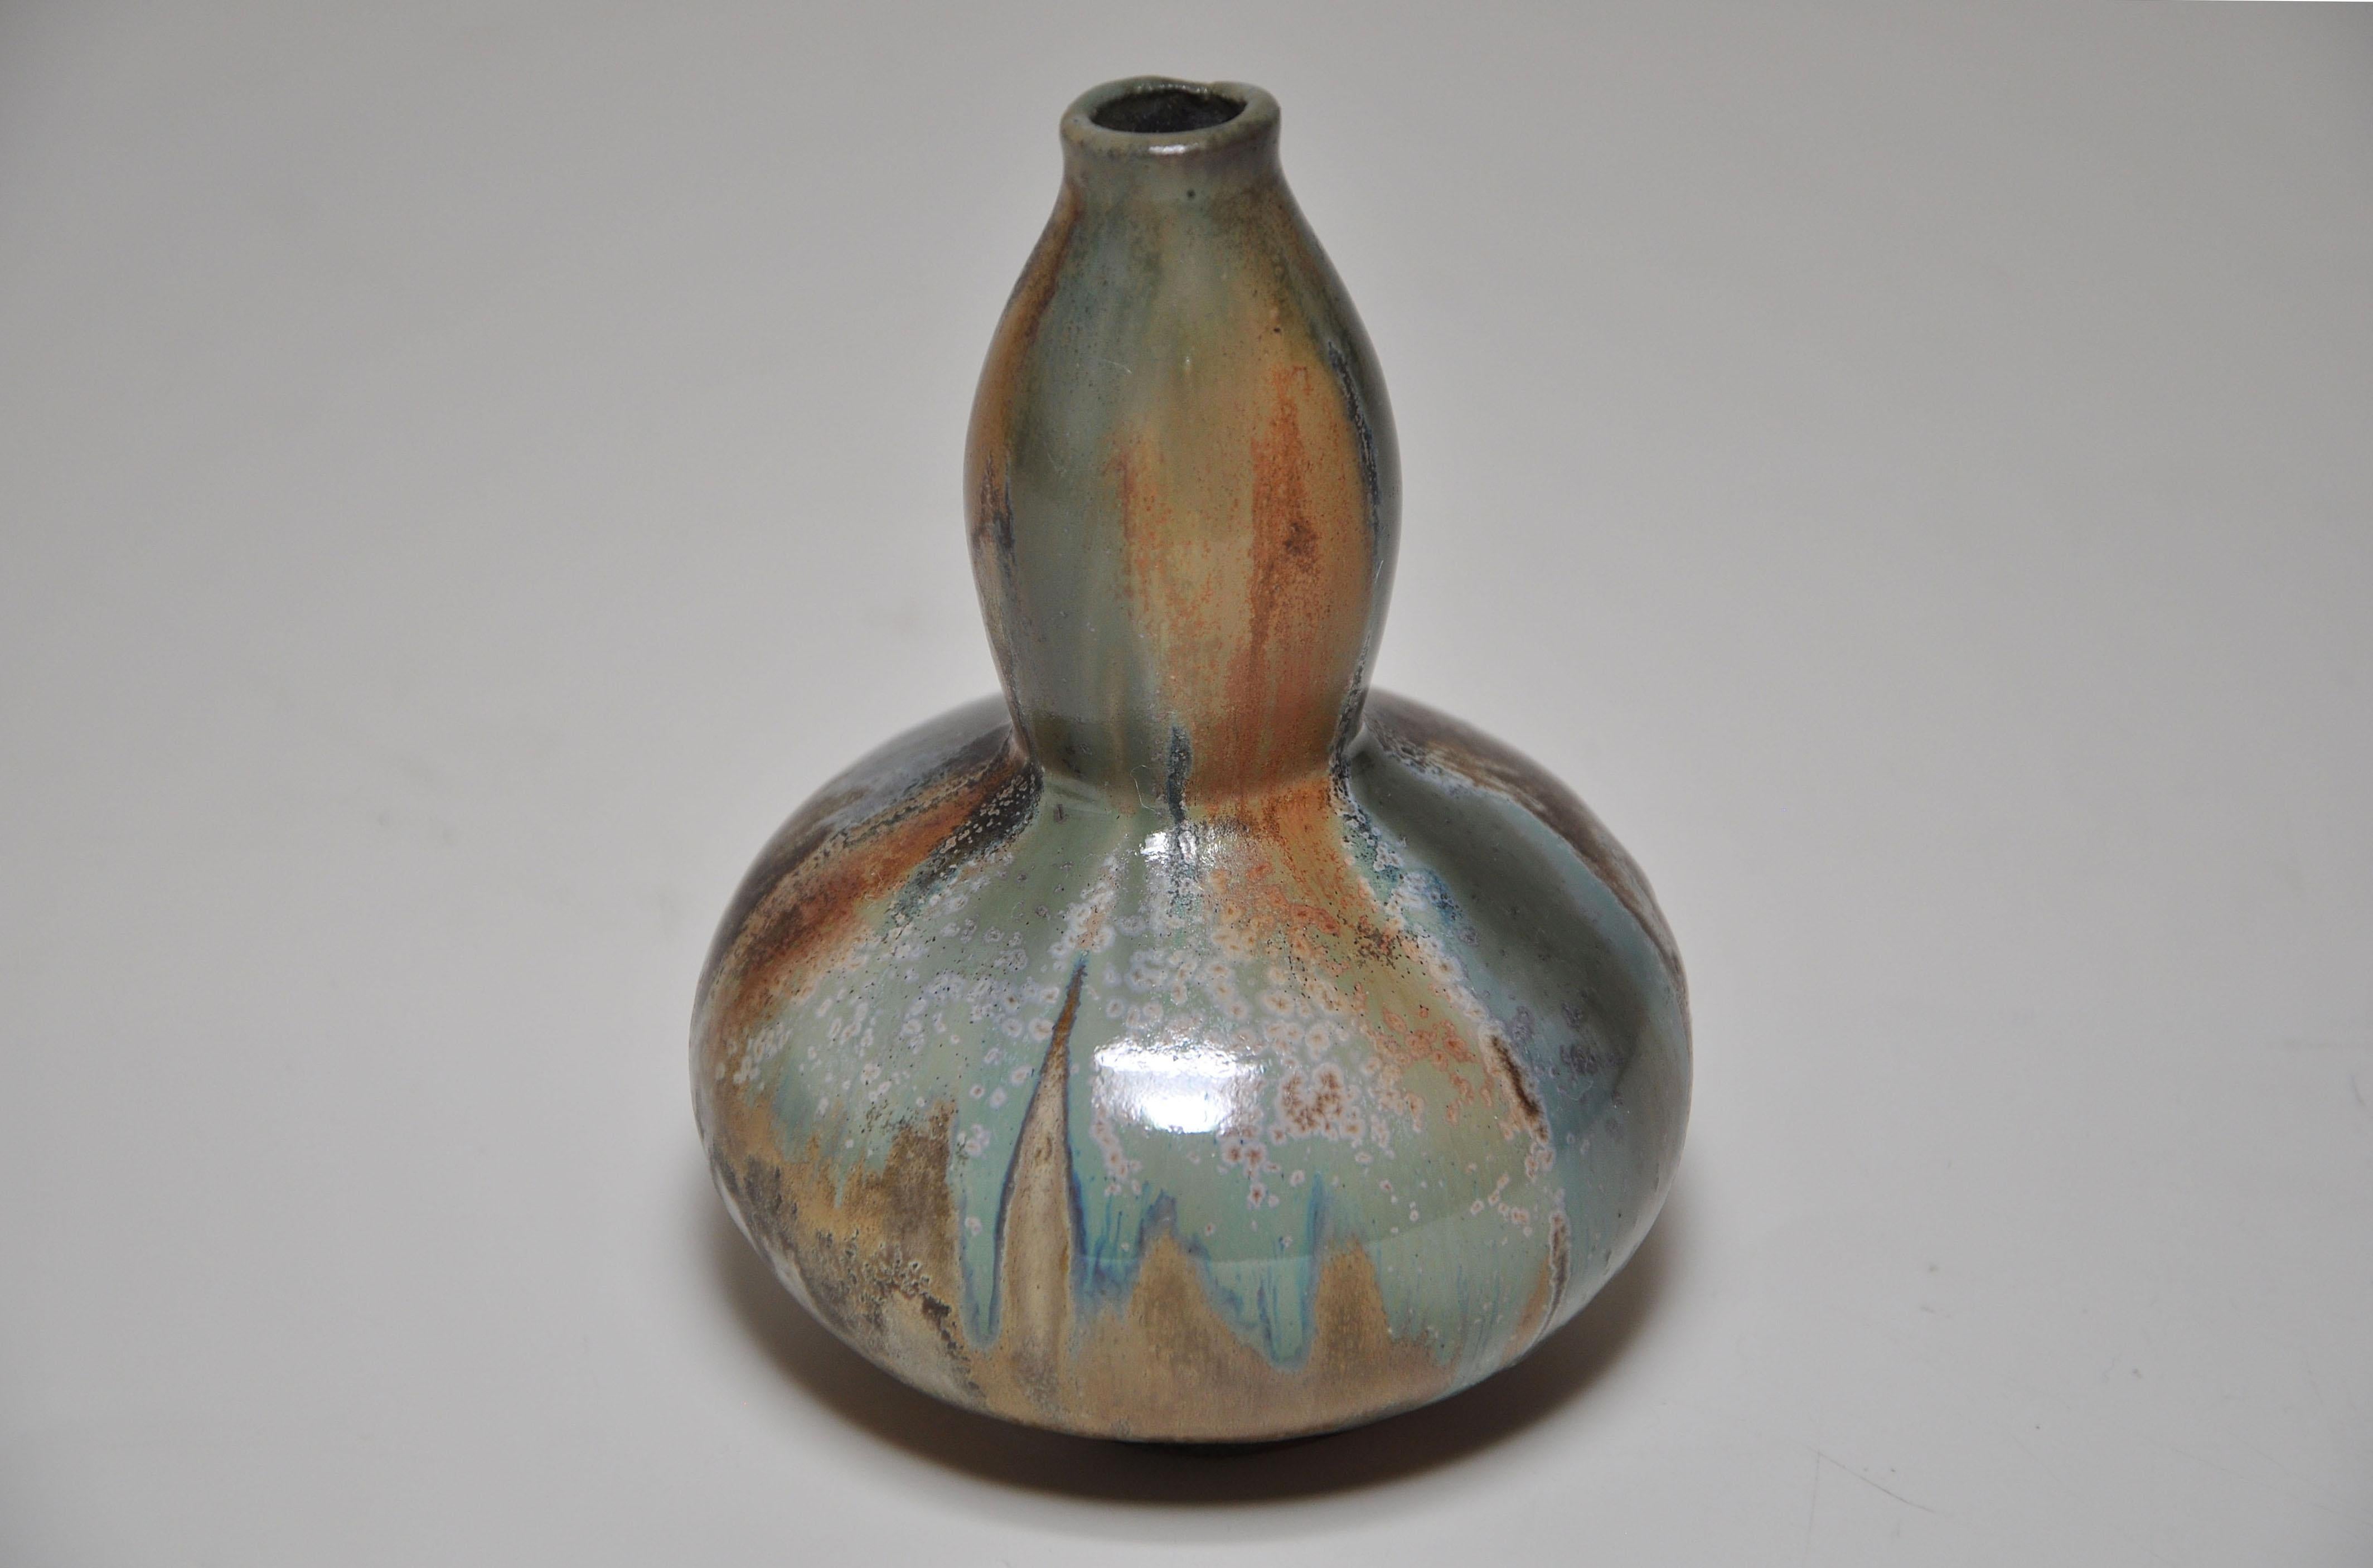 Un rare petit vase en grès de forme japonaise à double gourde, traité librement au niveau du bord supérieur. Elle est recouverte d'une épaisse glaçure brune, ocre verte et flammée. Par le céramiste d'art français Jean Langlade (1879-1928) de Paris